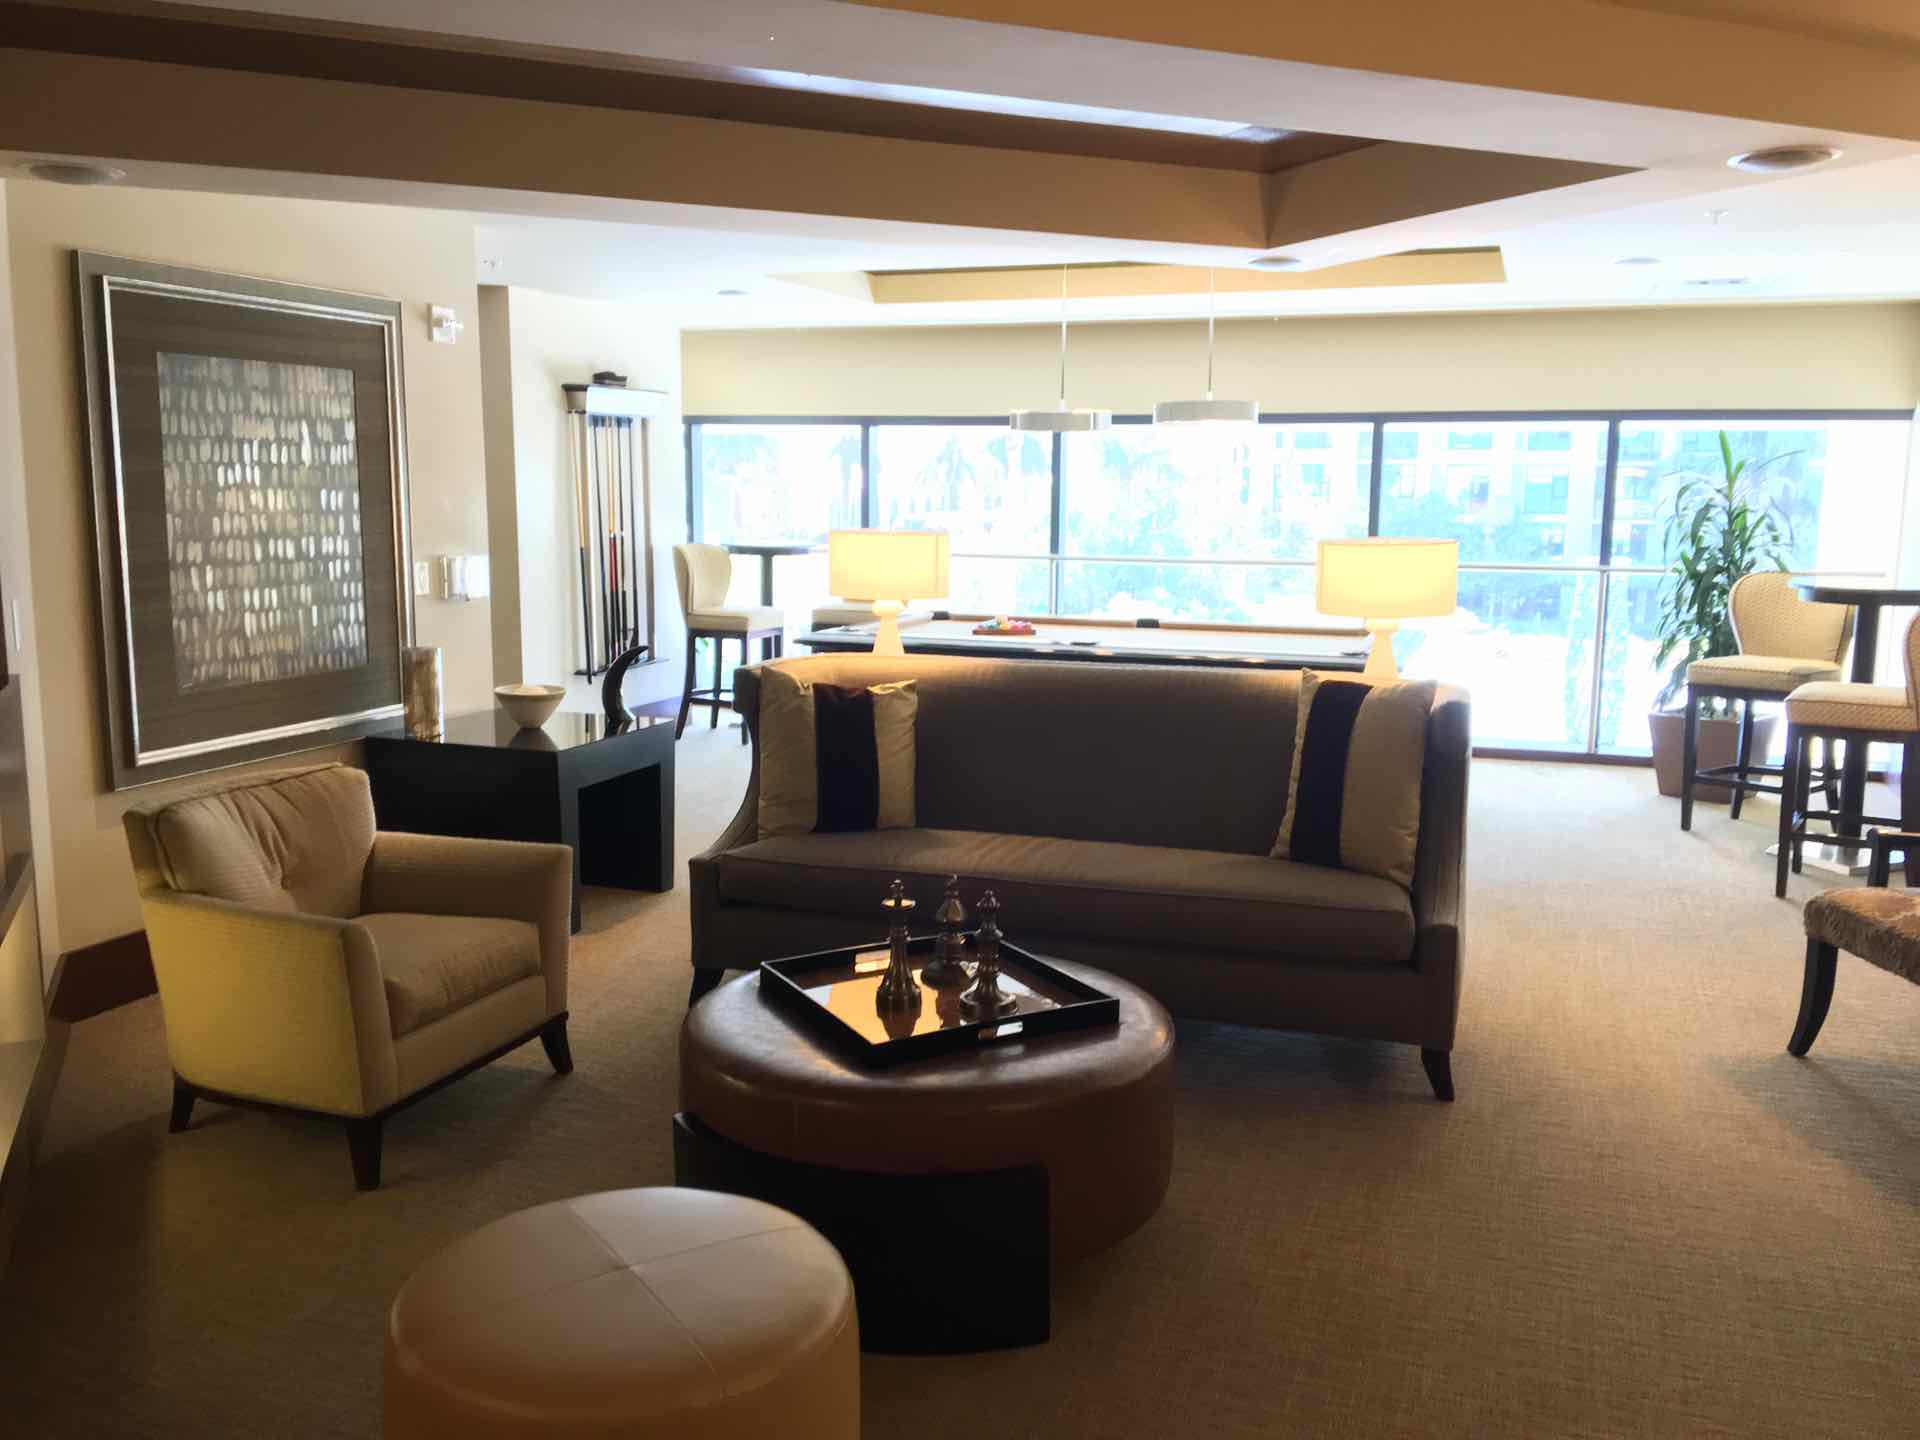 Lounge area located on third floor of condominium complex